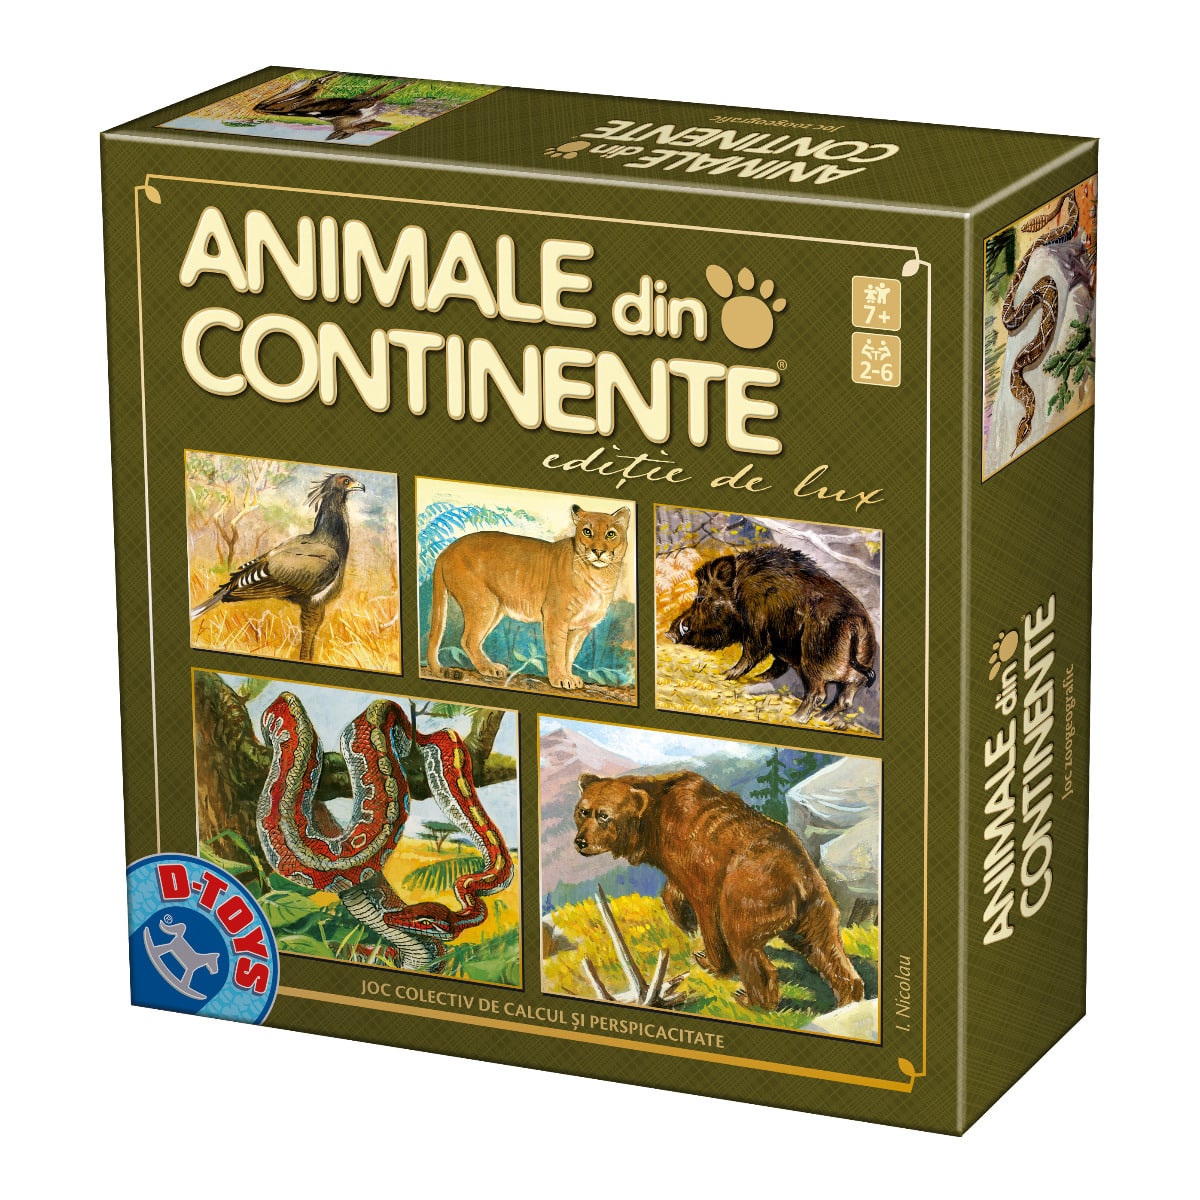 Joc Animale din continente, ediția de lux - Joc de cultură generală